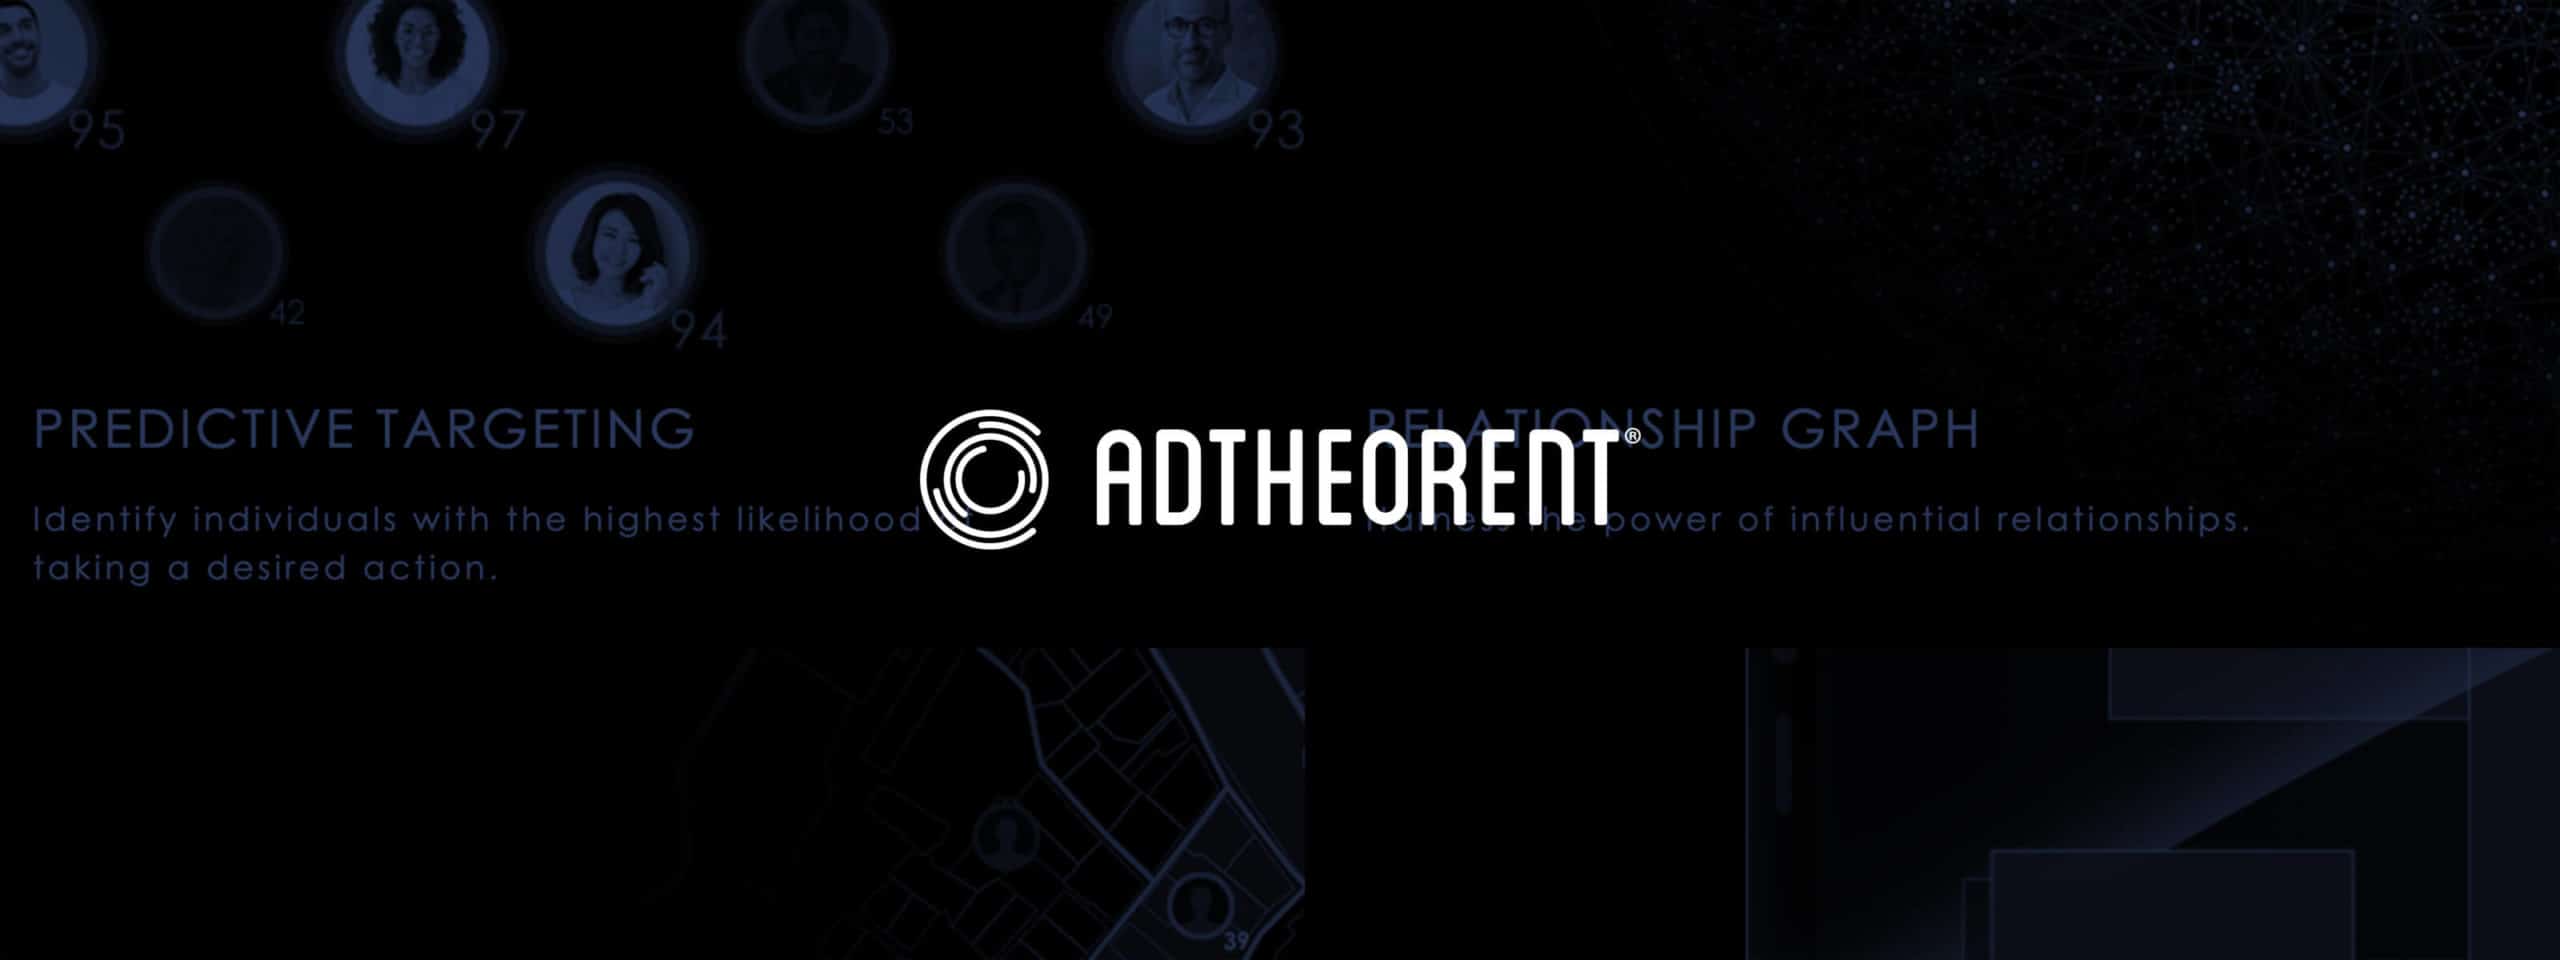 AdTheorent logo and hero